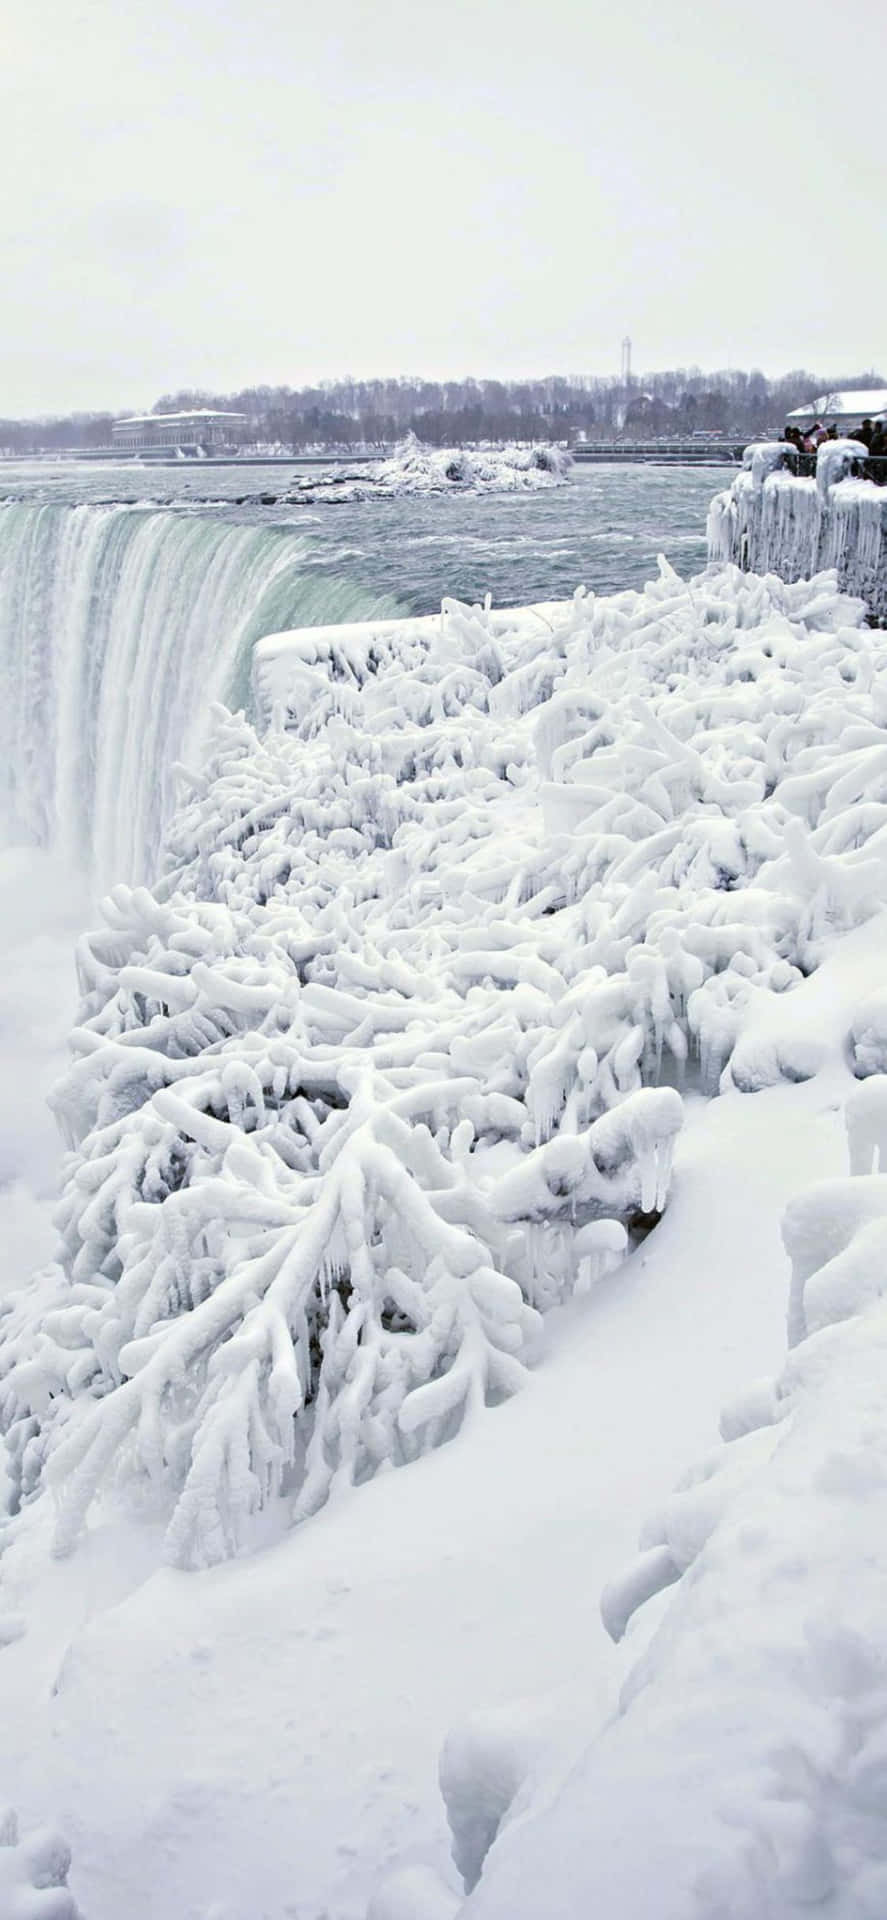 Iphonex Vinterbakgrund Av Niagarafallen.